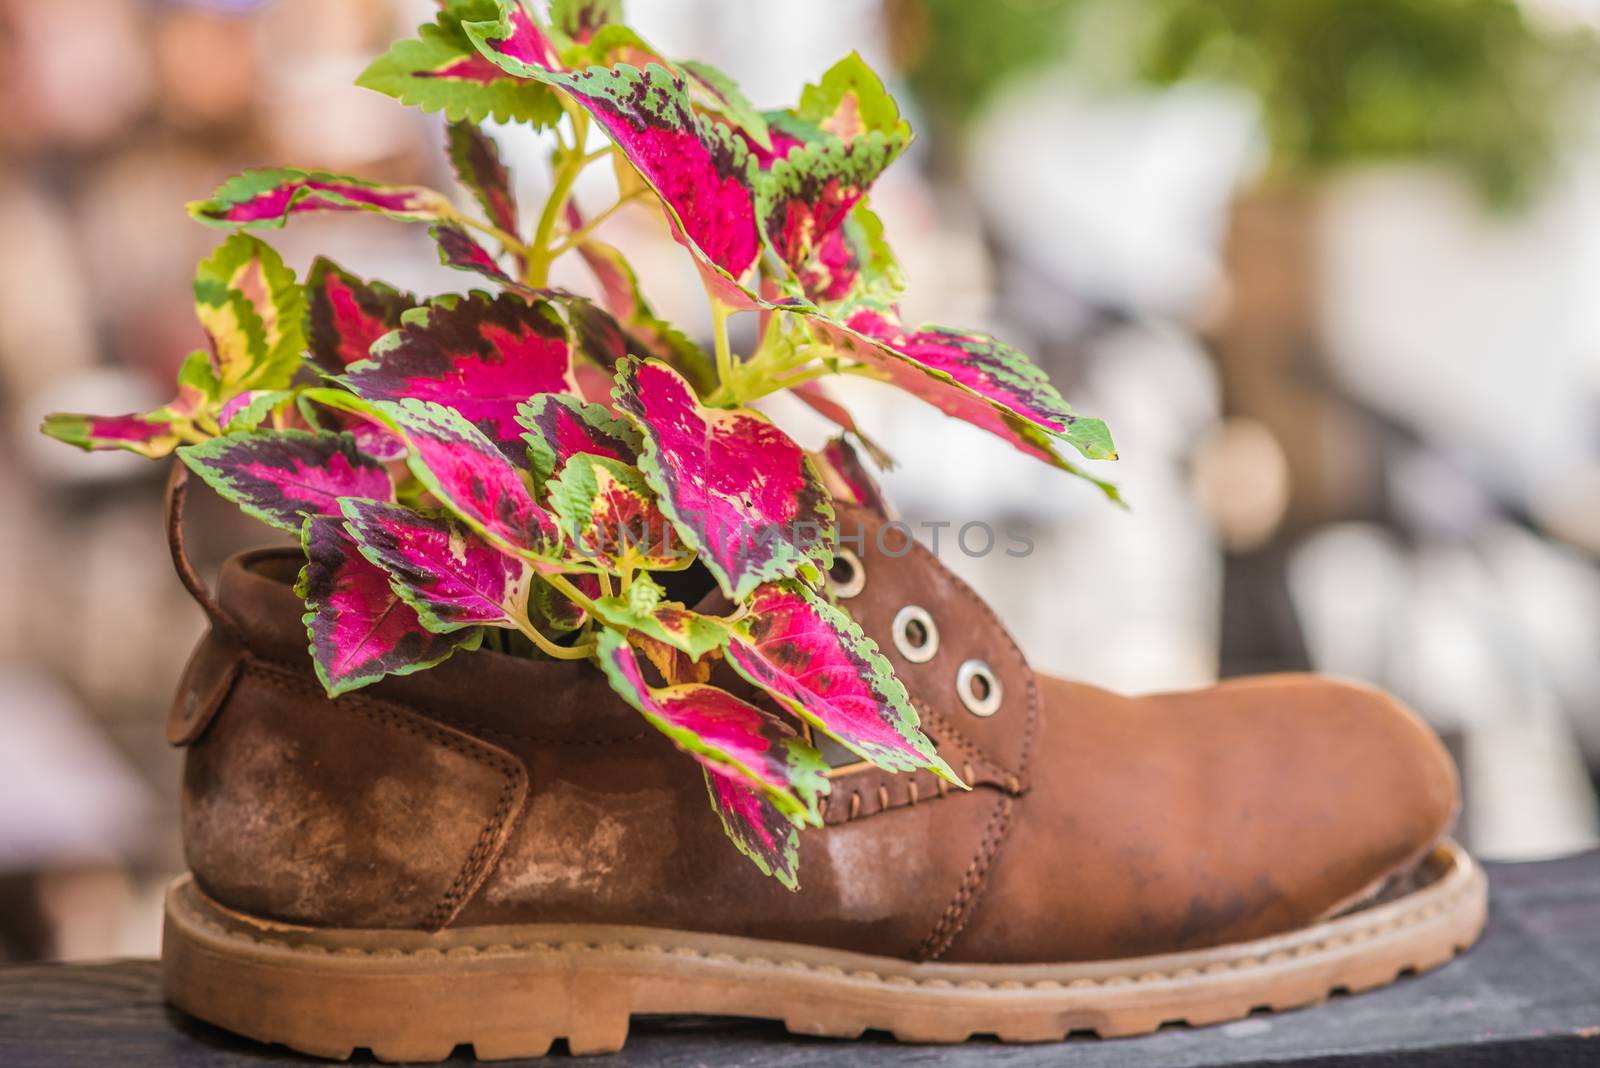 Plants growing in tattered shoe by okskukuruza